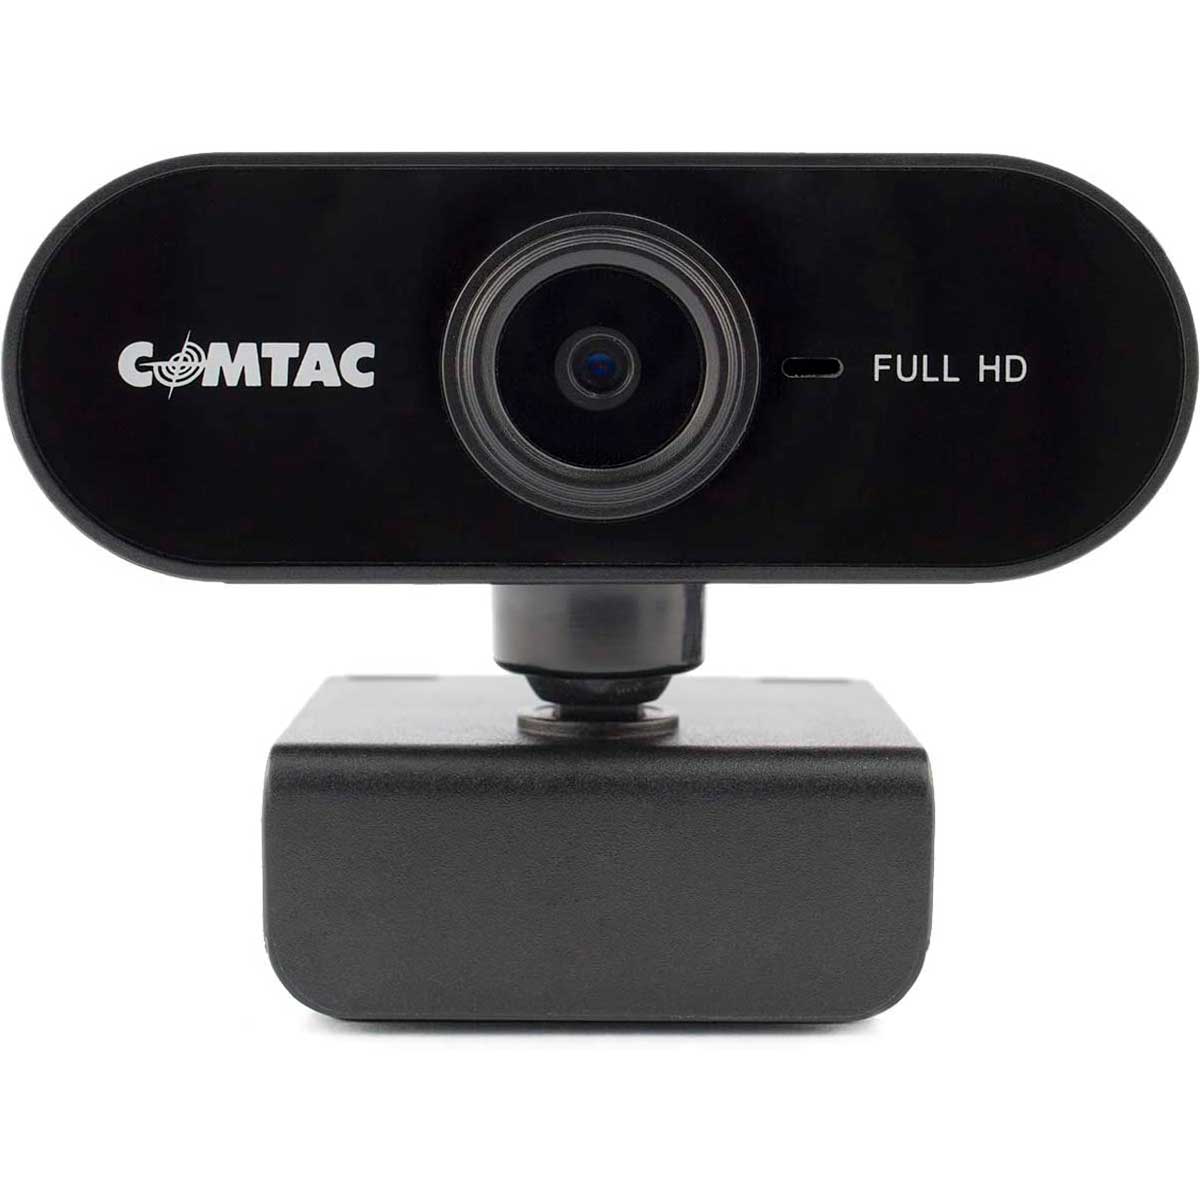 Web Câmera Comtac 9379 - Vídeochamadas em Full HD - com Microfone